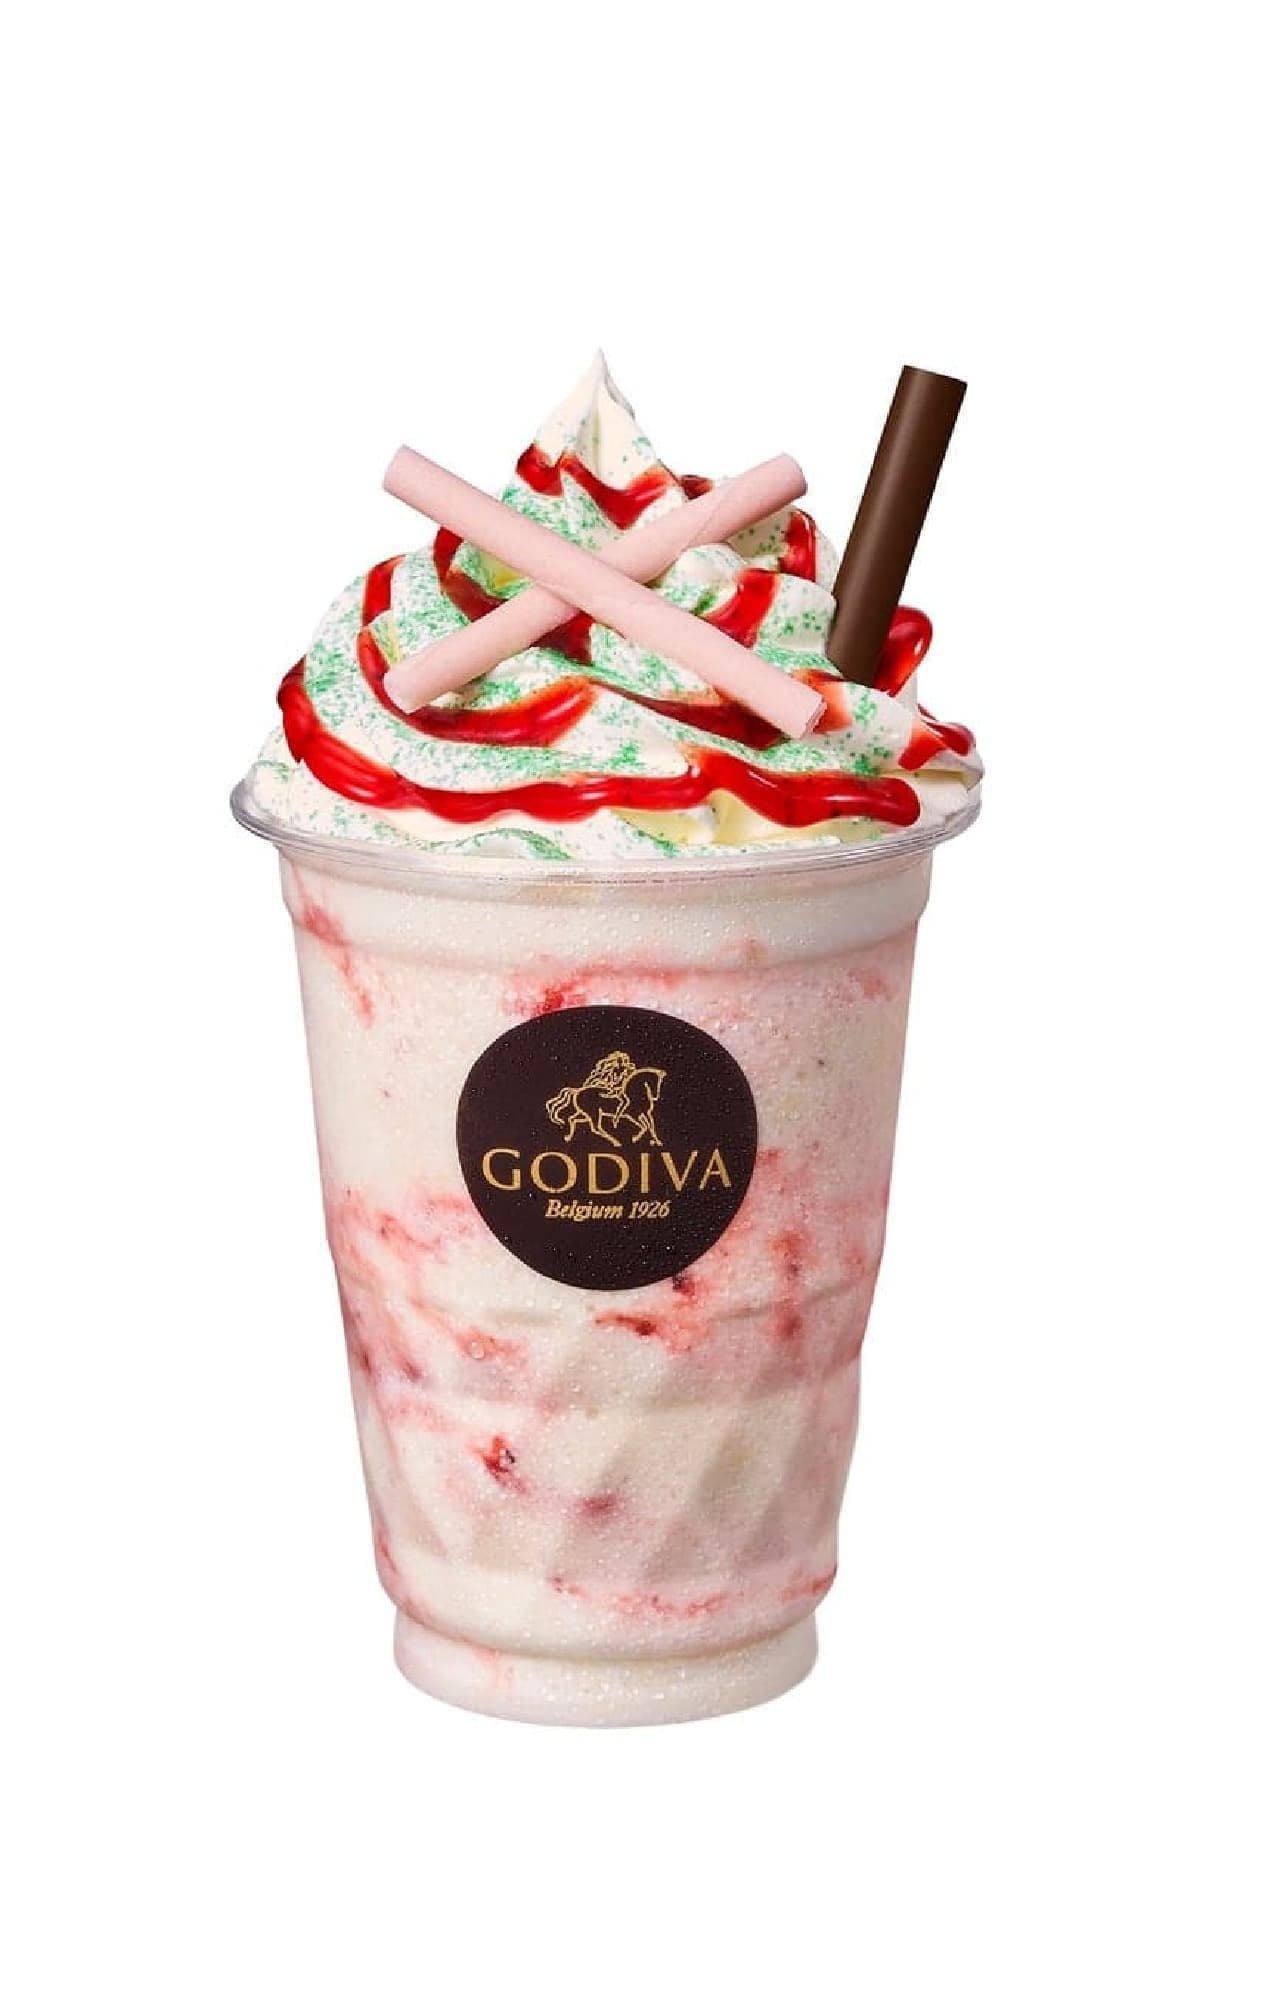 Godiva "Chocolixer Vanilla Strawberry Cheesecake".